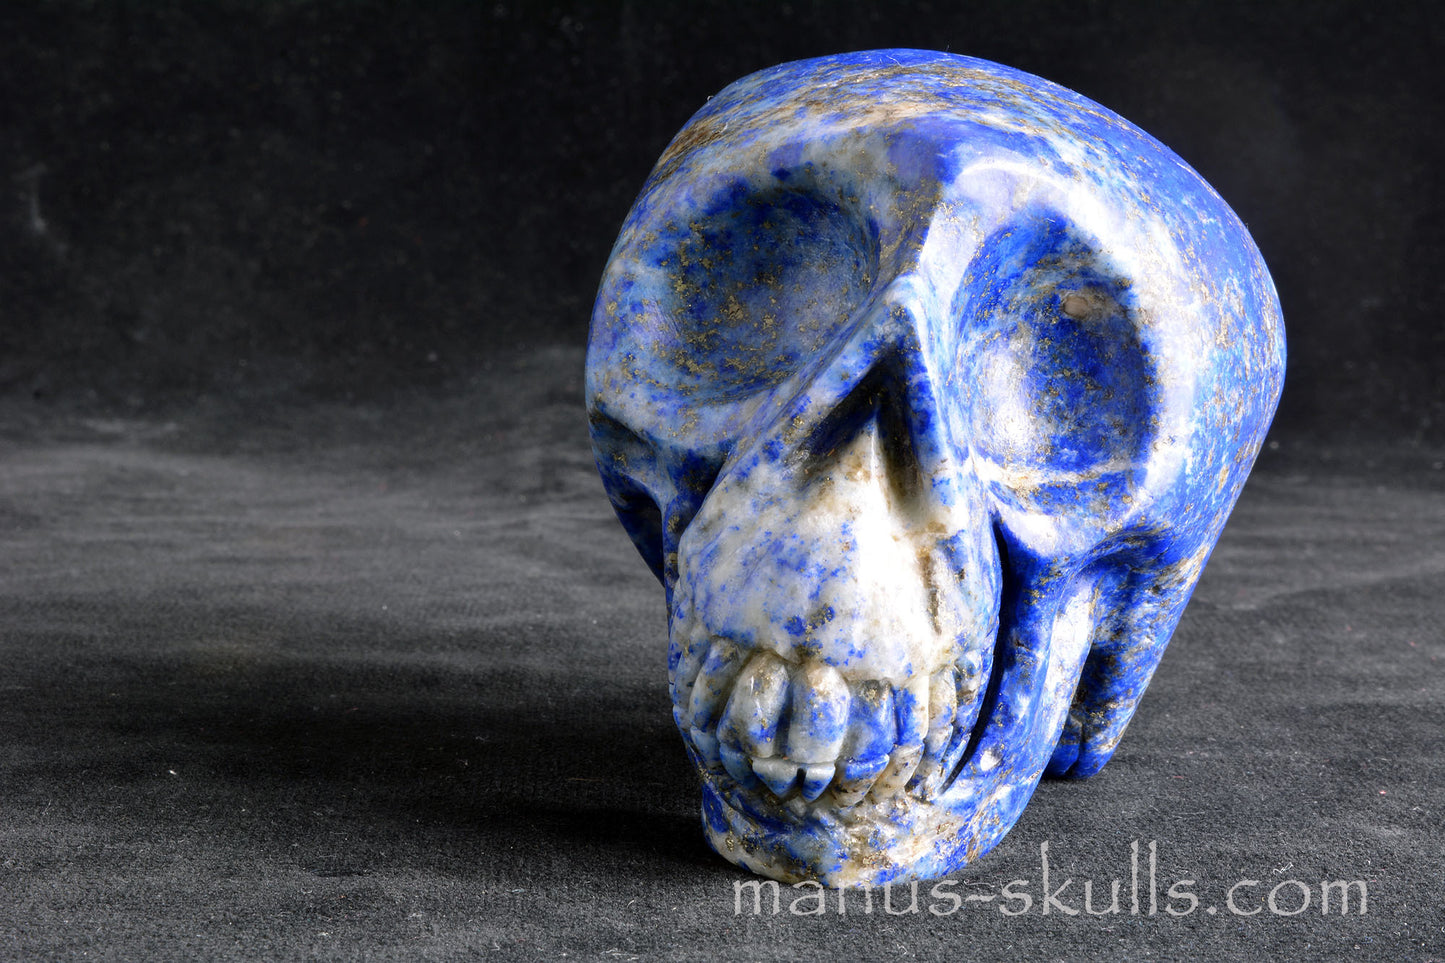 Lapiz Lazuli Skull